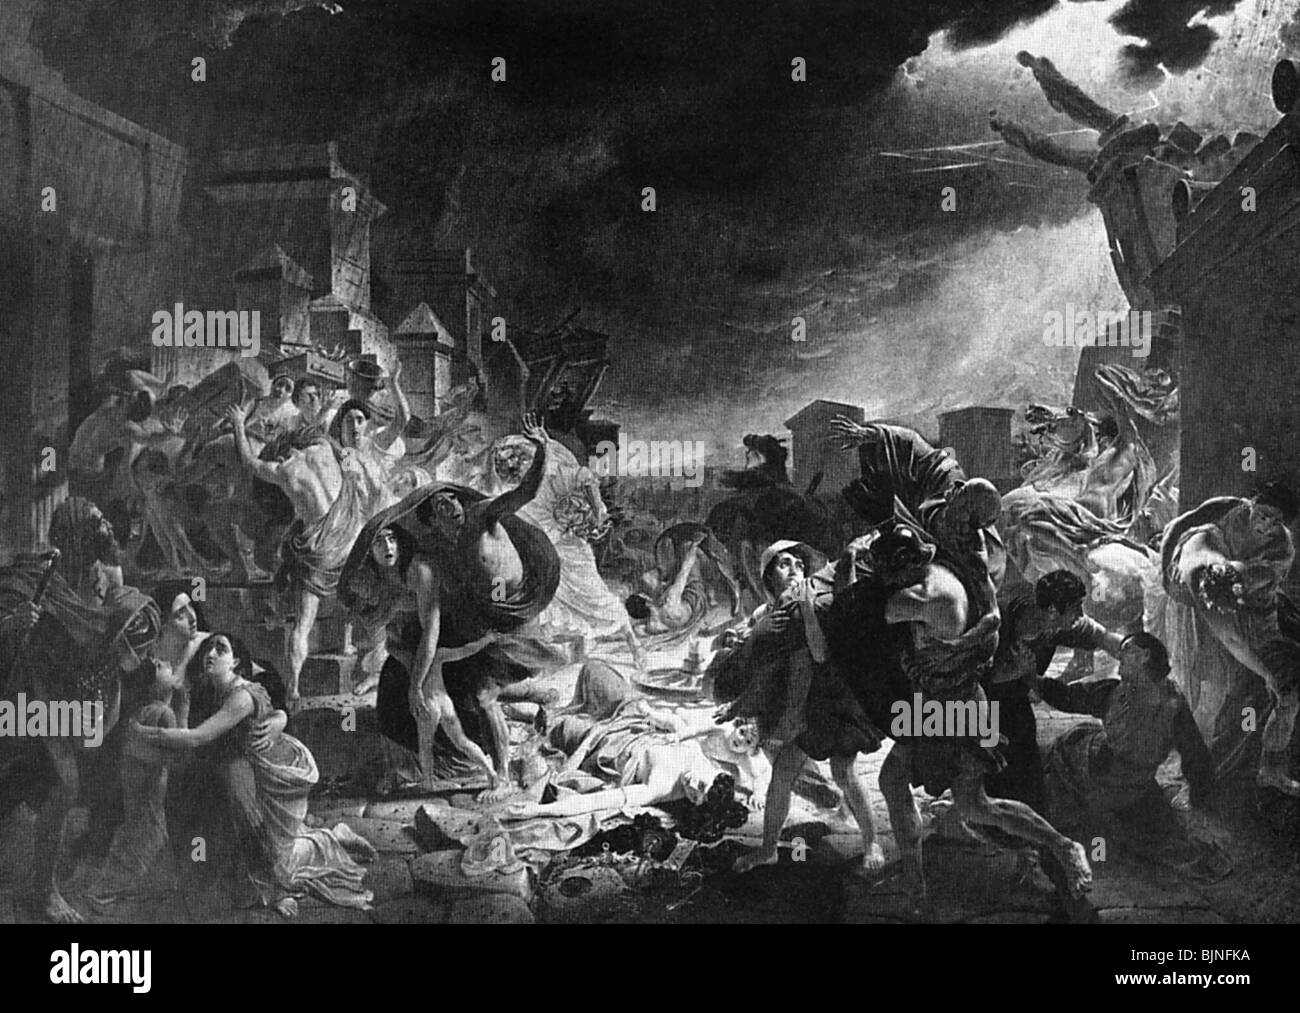 Alte Welt, Römisches Reich, Zerstörung Pompejis, "Der letzte Tag Pompejis", Gemälde von K. P. Brüllow, ca. 1830 - 1833, Tratiokov Galerie Moskau, Stockfoto